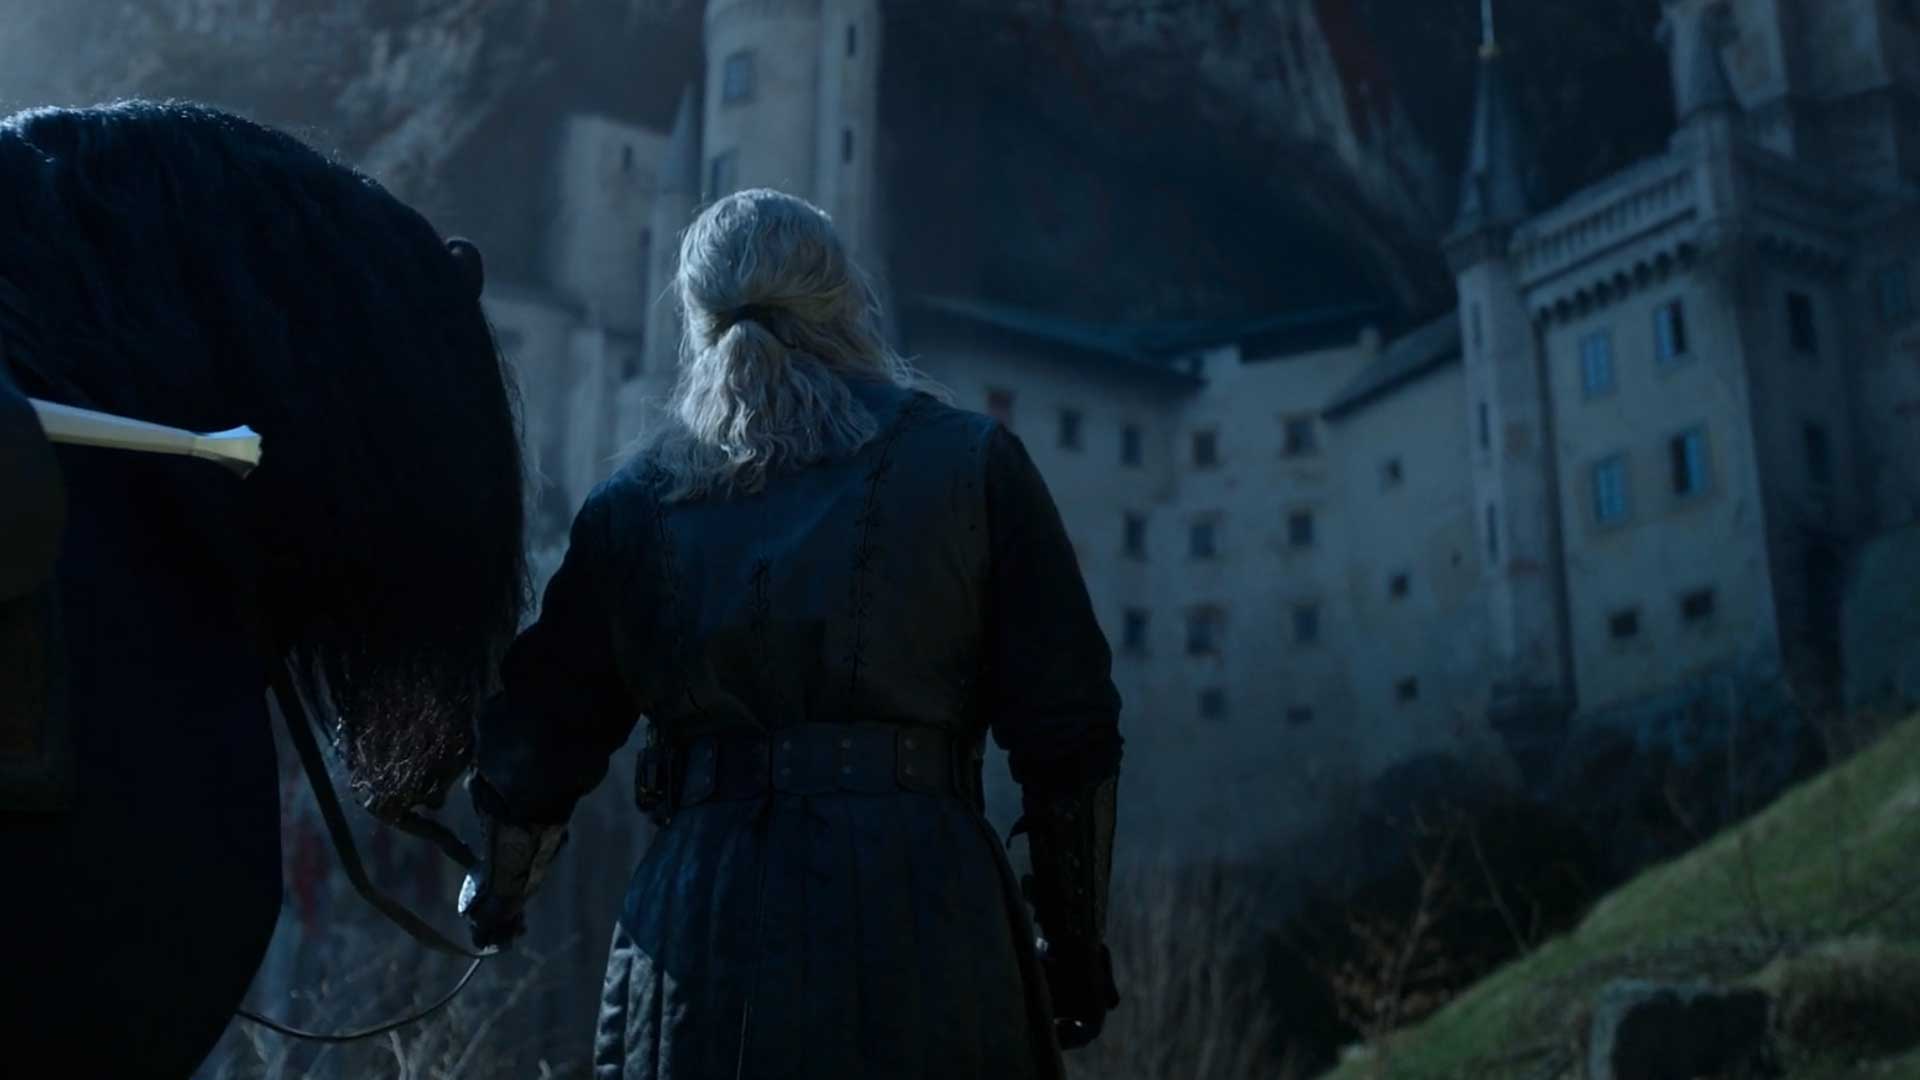 گرالت با بازی هنری کویل در کنار اسب در فصل سوم سریال ویچر